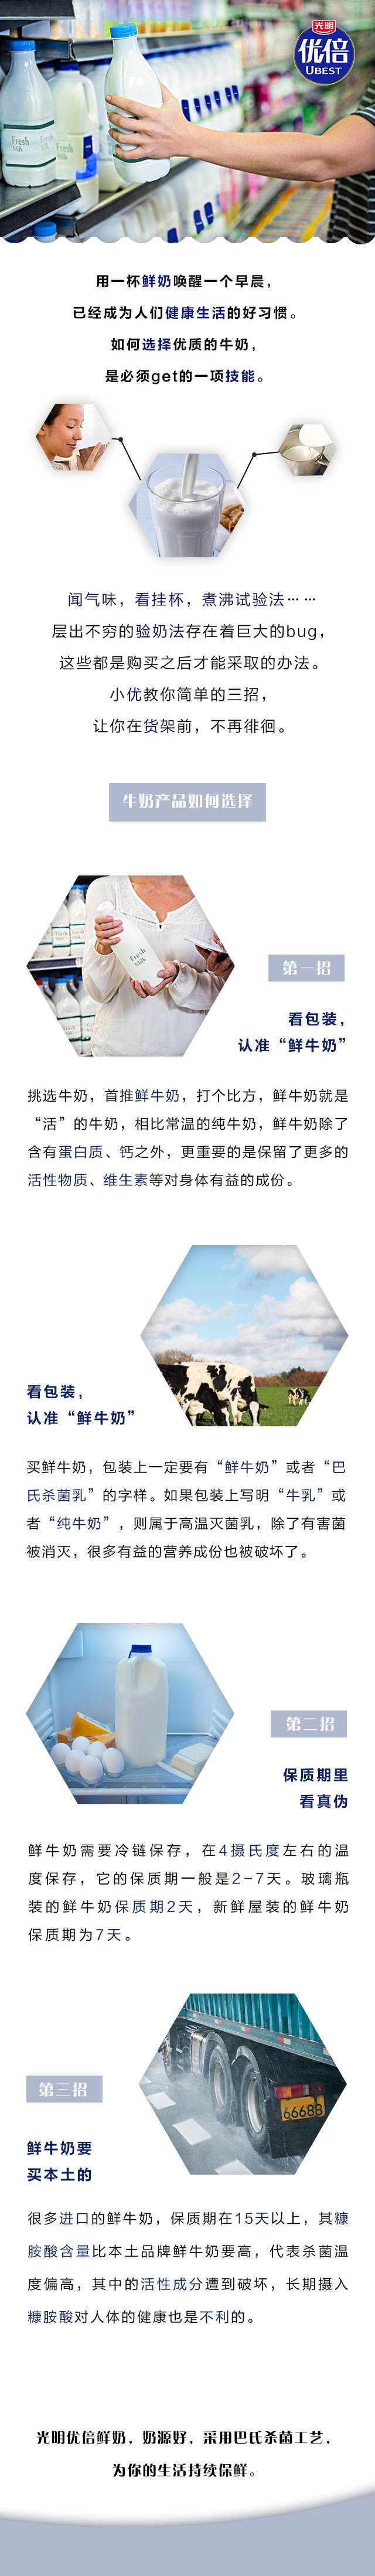 【8月10日】新鲜教育丨琳琅满目的牛奶产品如何选择.jpg